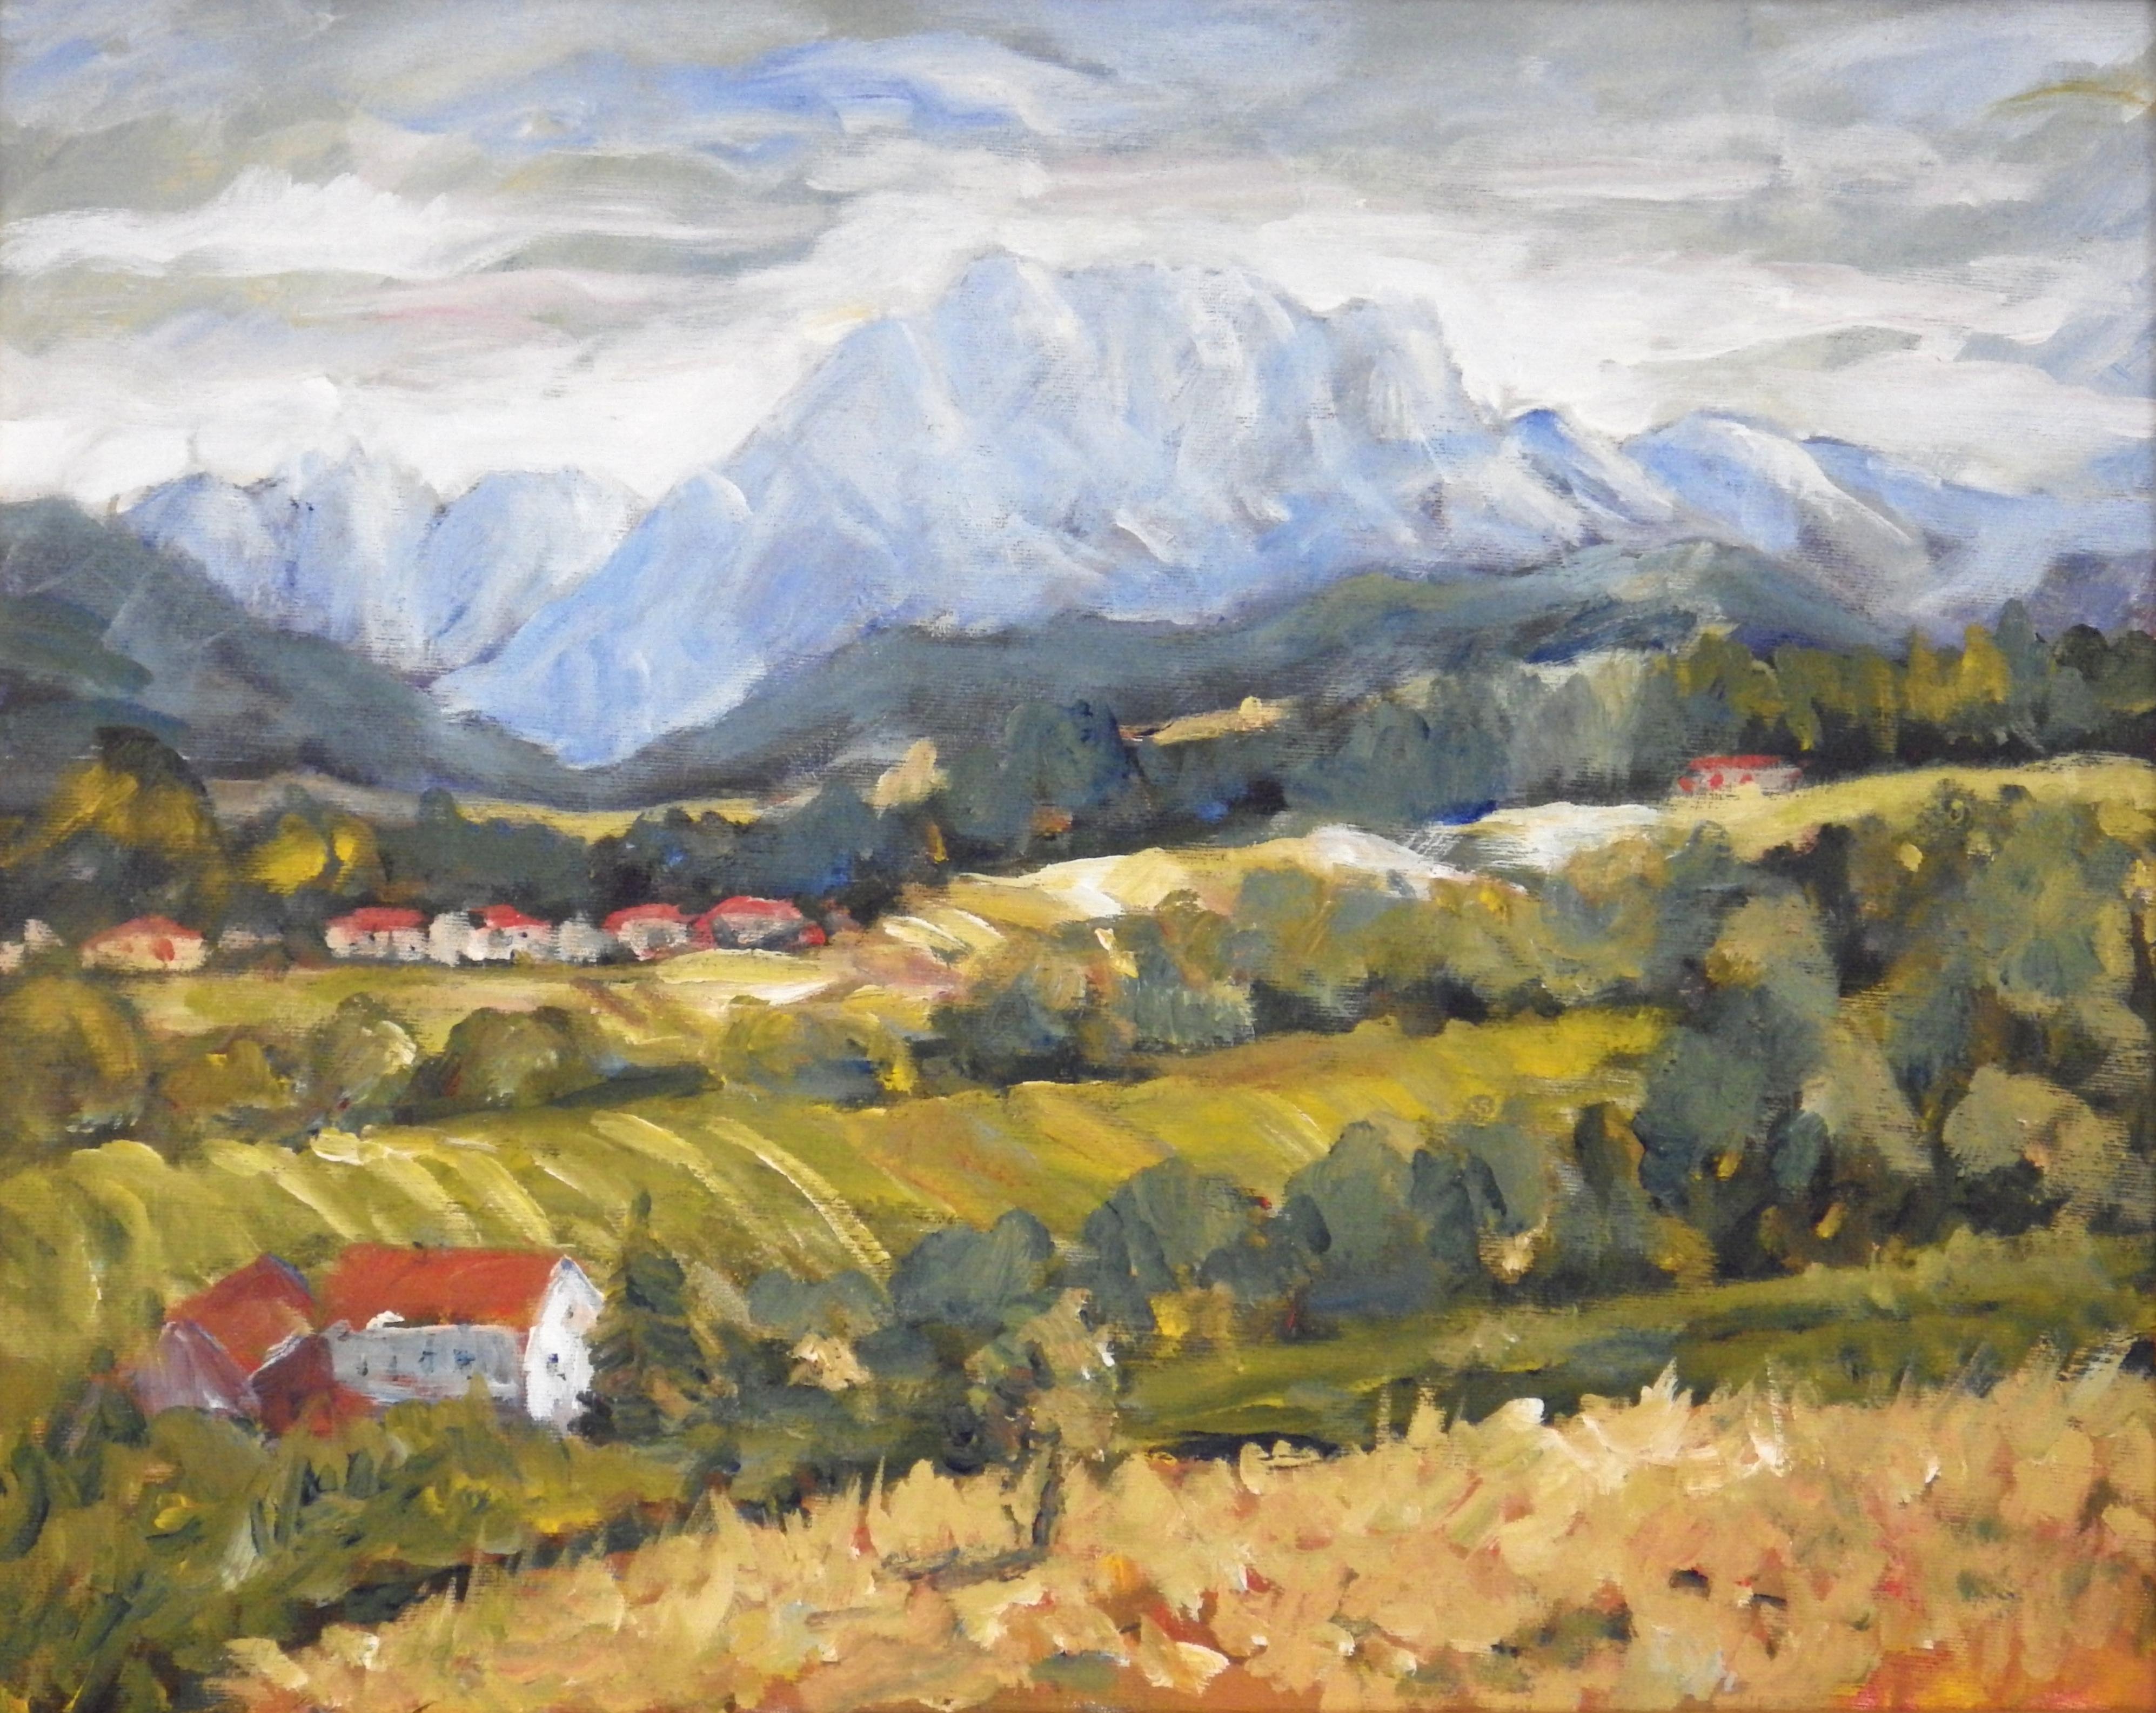 Landscape Painting Ingrid Dohm - Peinture originale d'un paysage impressionniste contemporain sur toile, Autriche, Edt